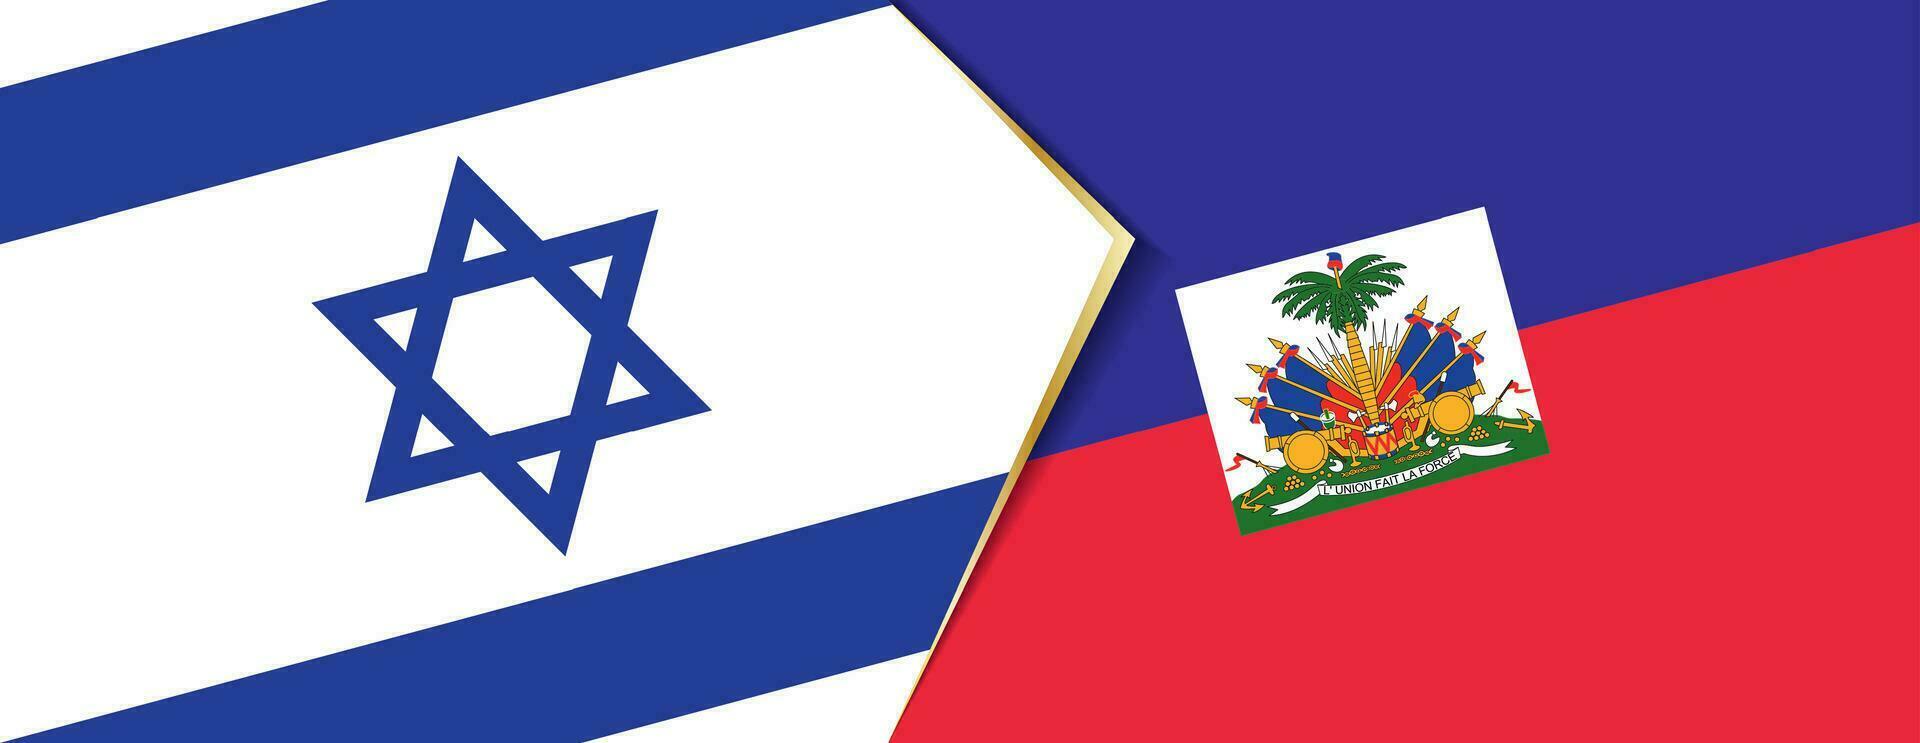 Israel och haiti flaggor, två vektor flaggor.